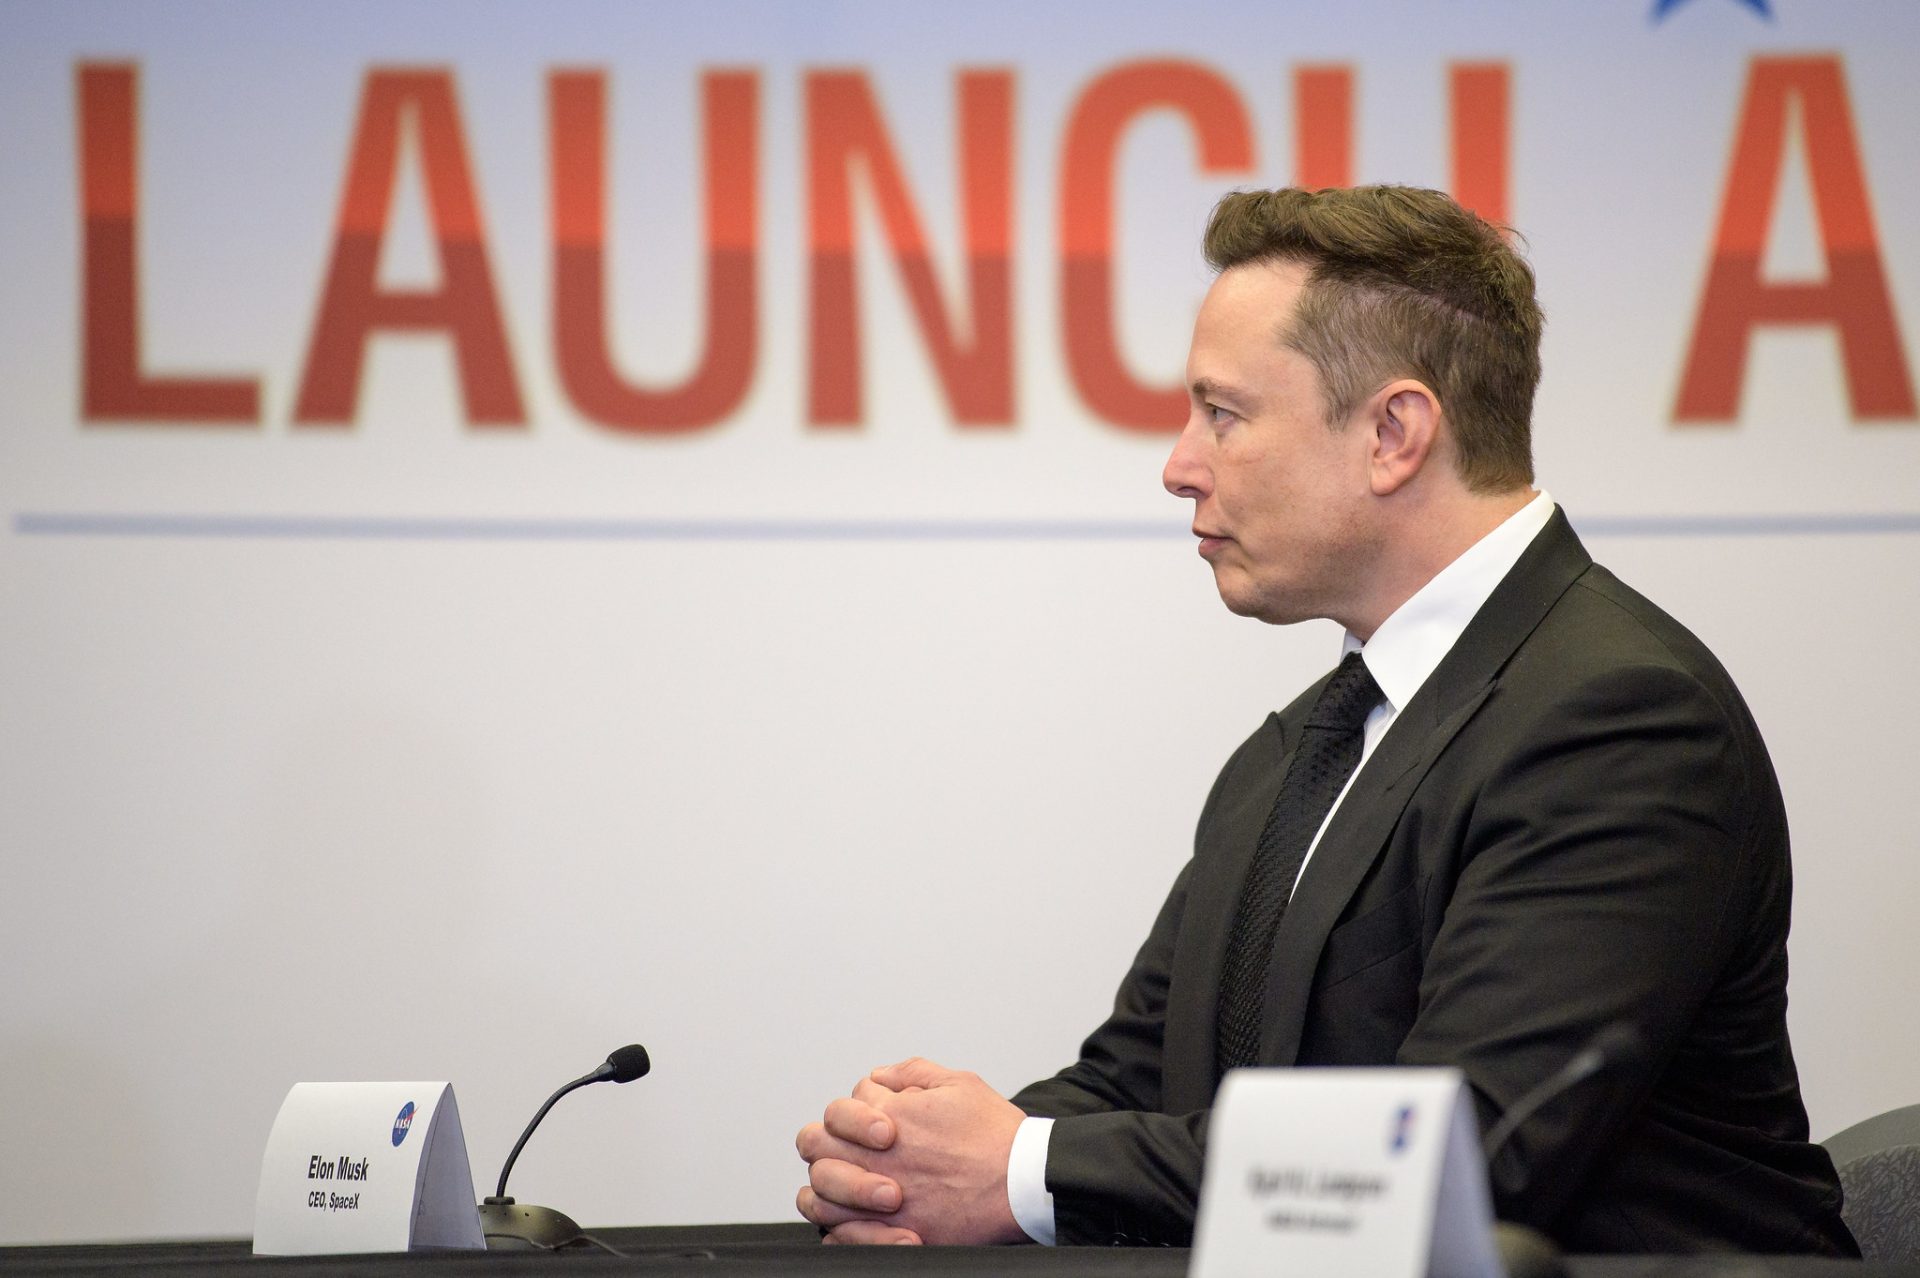 Elon Musk scorns Jeff Bezos’ lawsuit on NASA moon lander